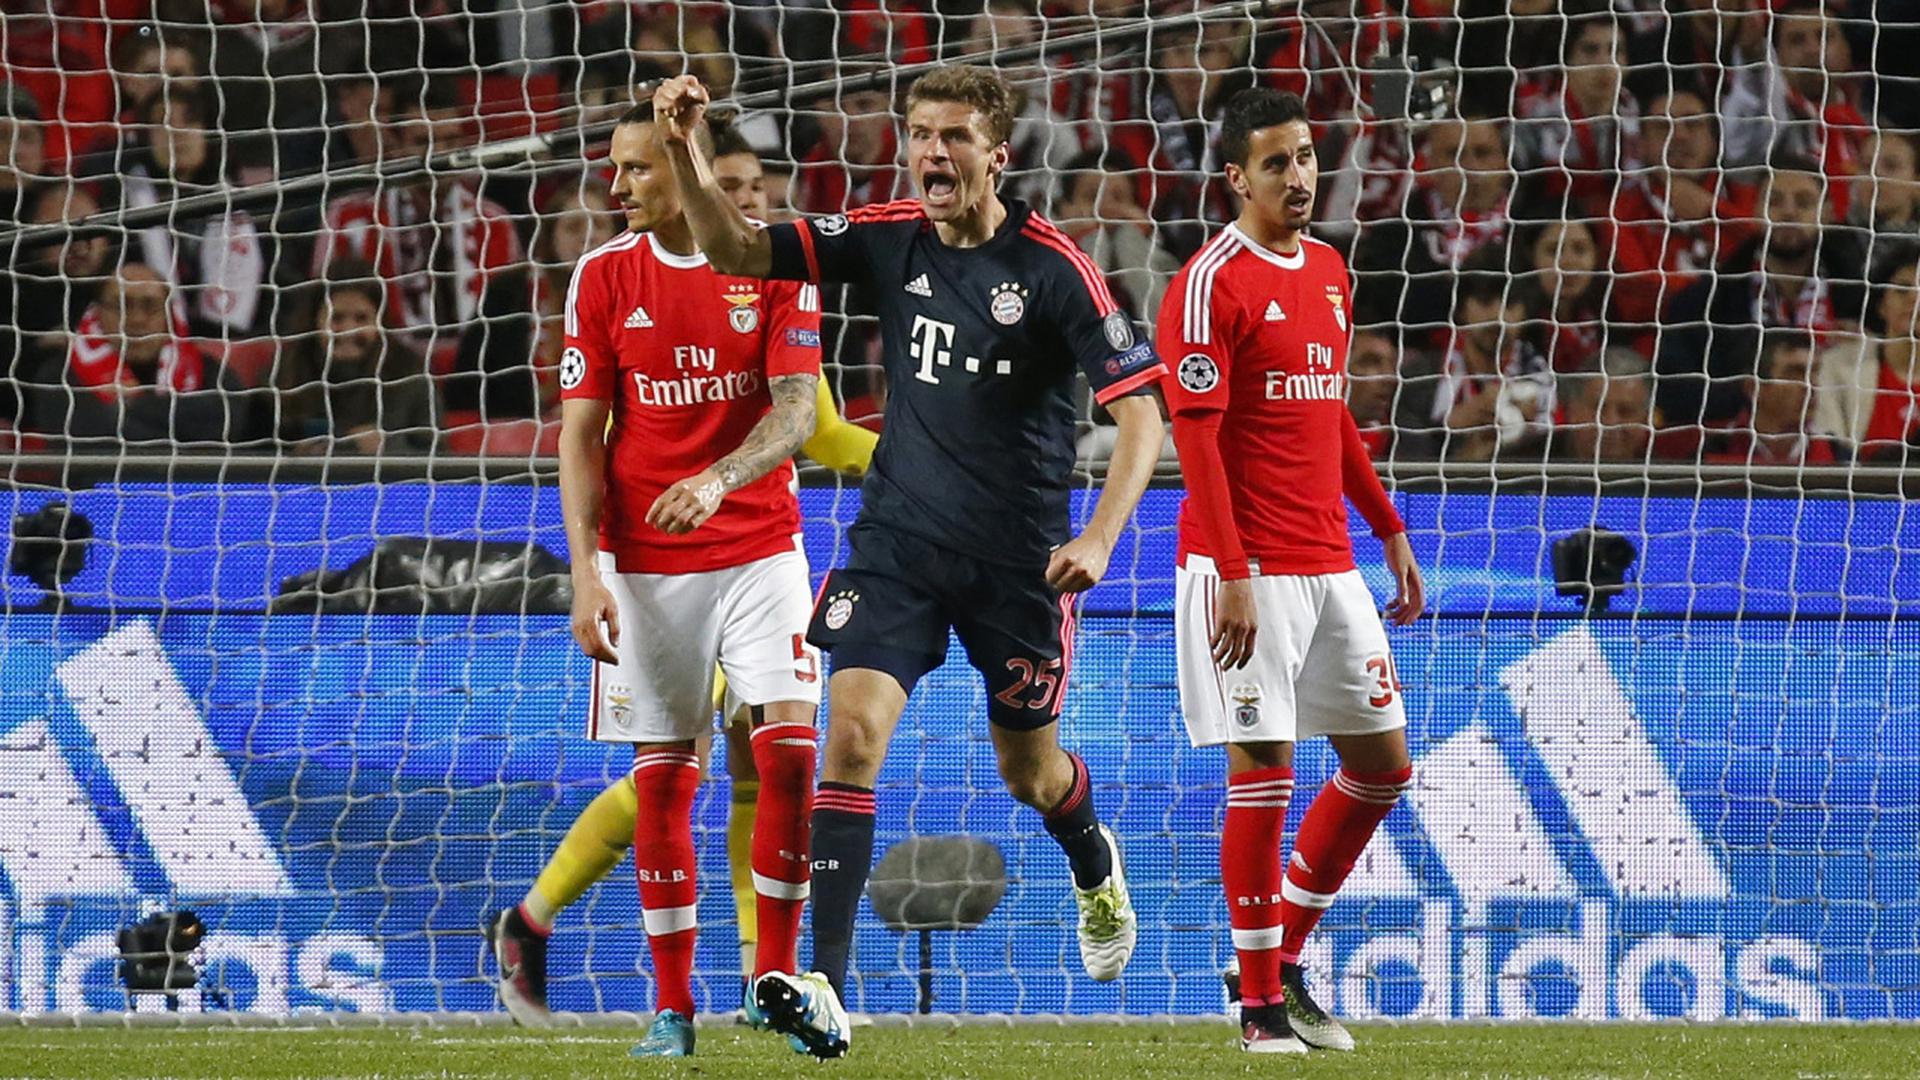 Benfica Lisbonne - Bayern Munich, 52e minute: 1-2, l'inévitable Thomas Müller est passé par là...